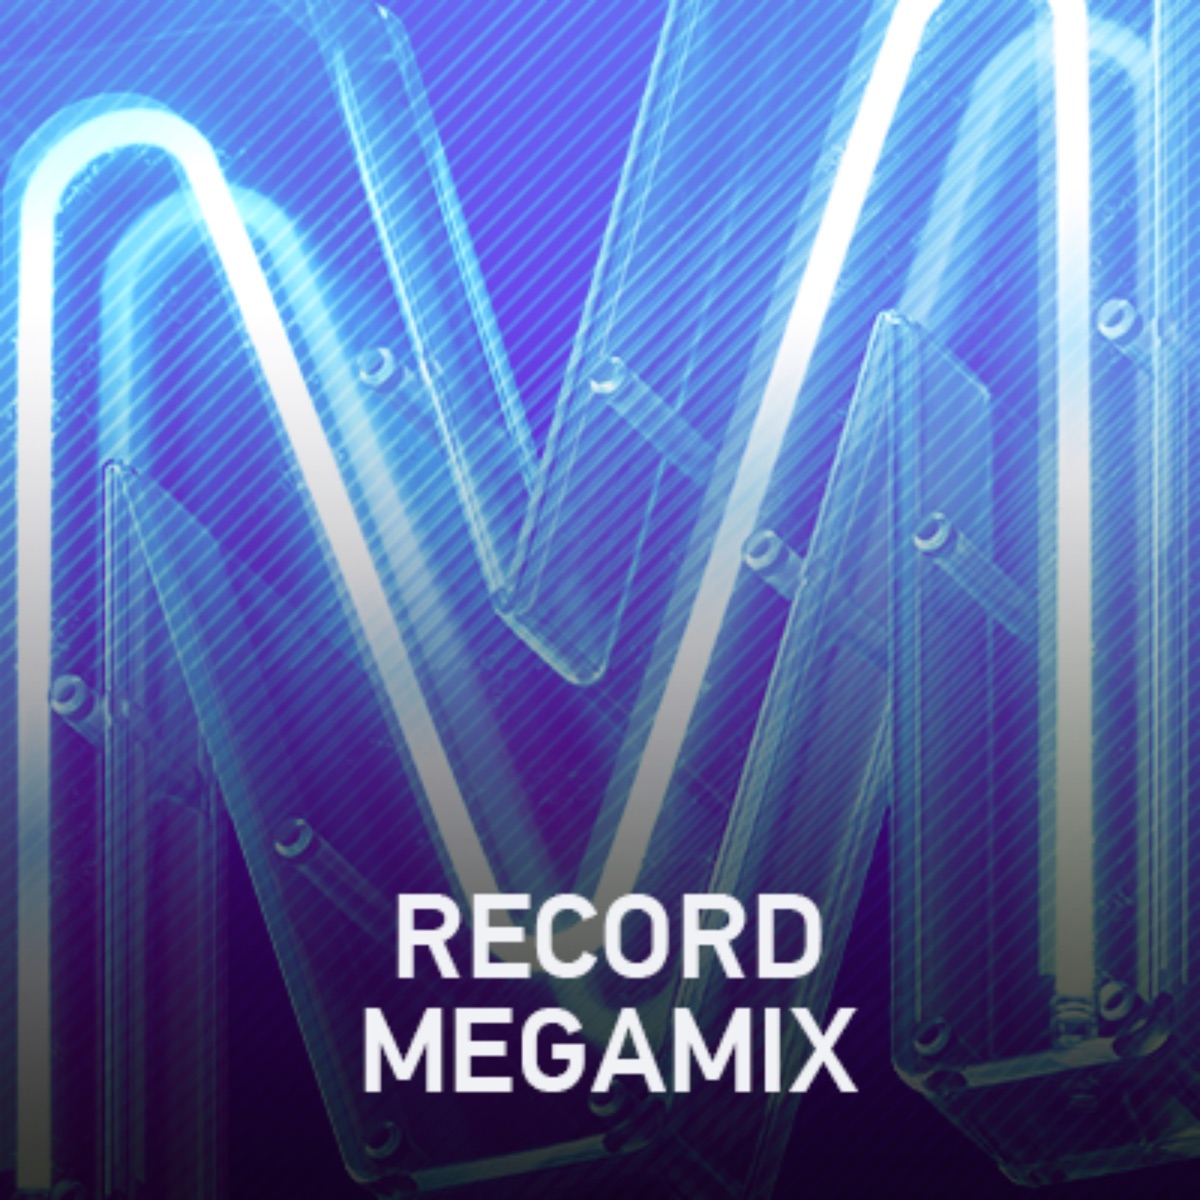 Megamix by DJ Peretse #2319 (31-07-2020)